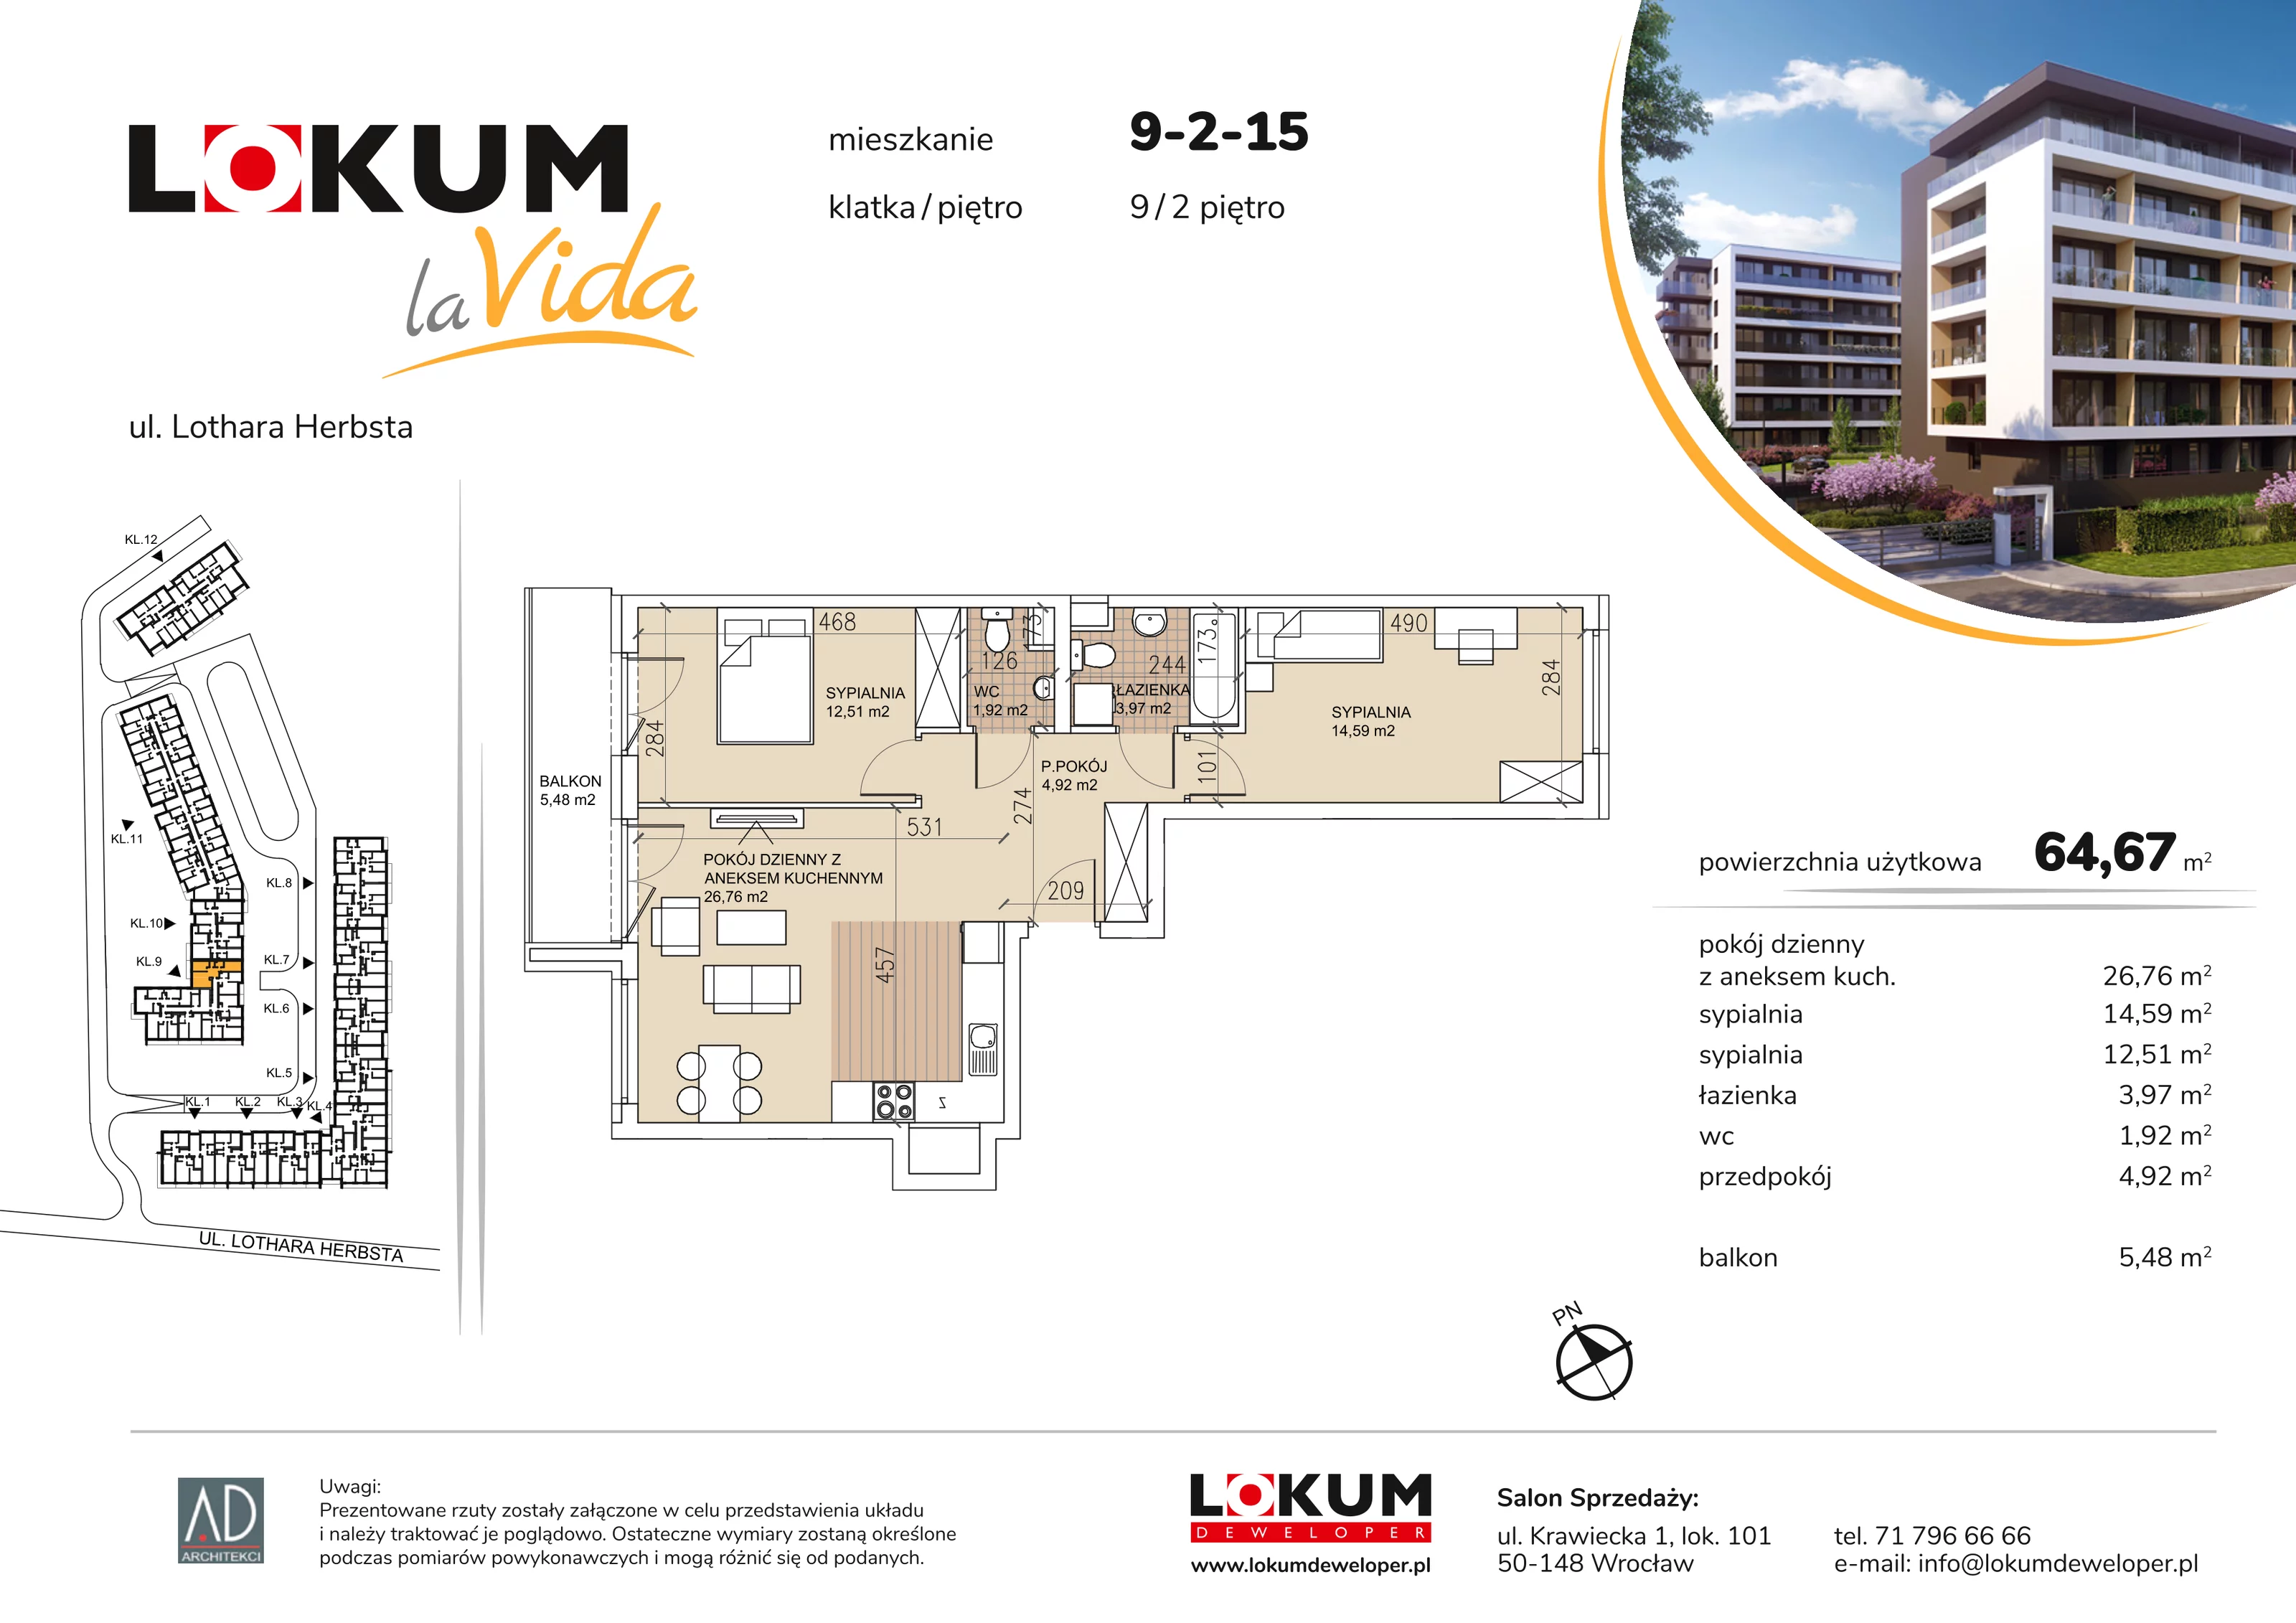 Mieszkanie 64,67 m², piętro 2, oferta nr 9-2-15, Lokum la Vida, Wrocław, Sołtysowice, ul. Lothara Herbsta